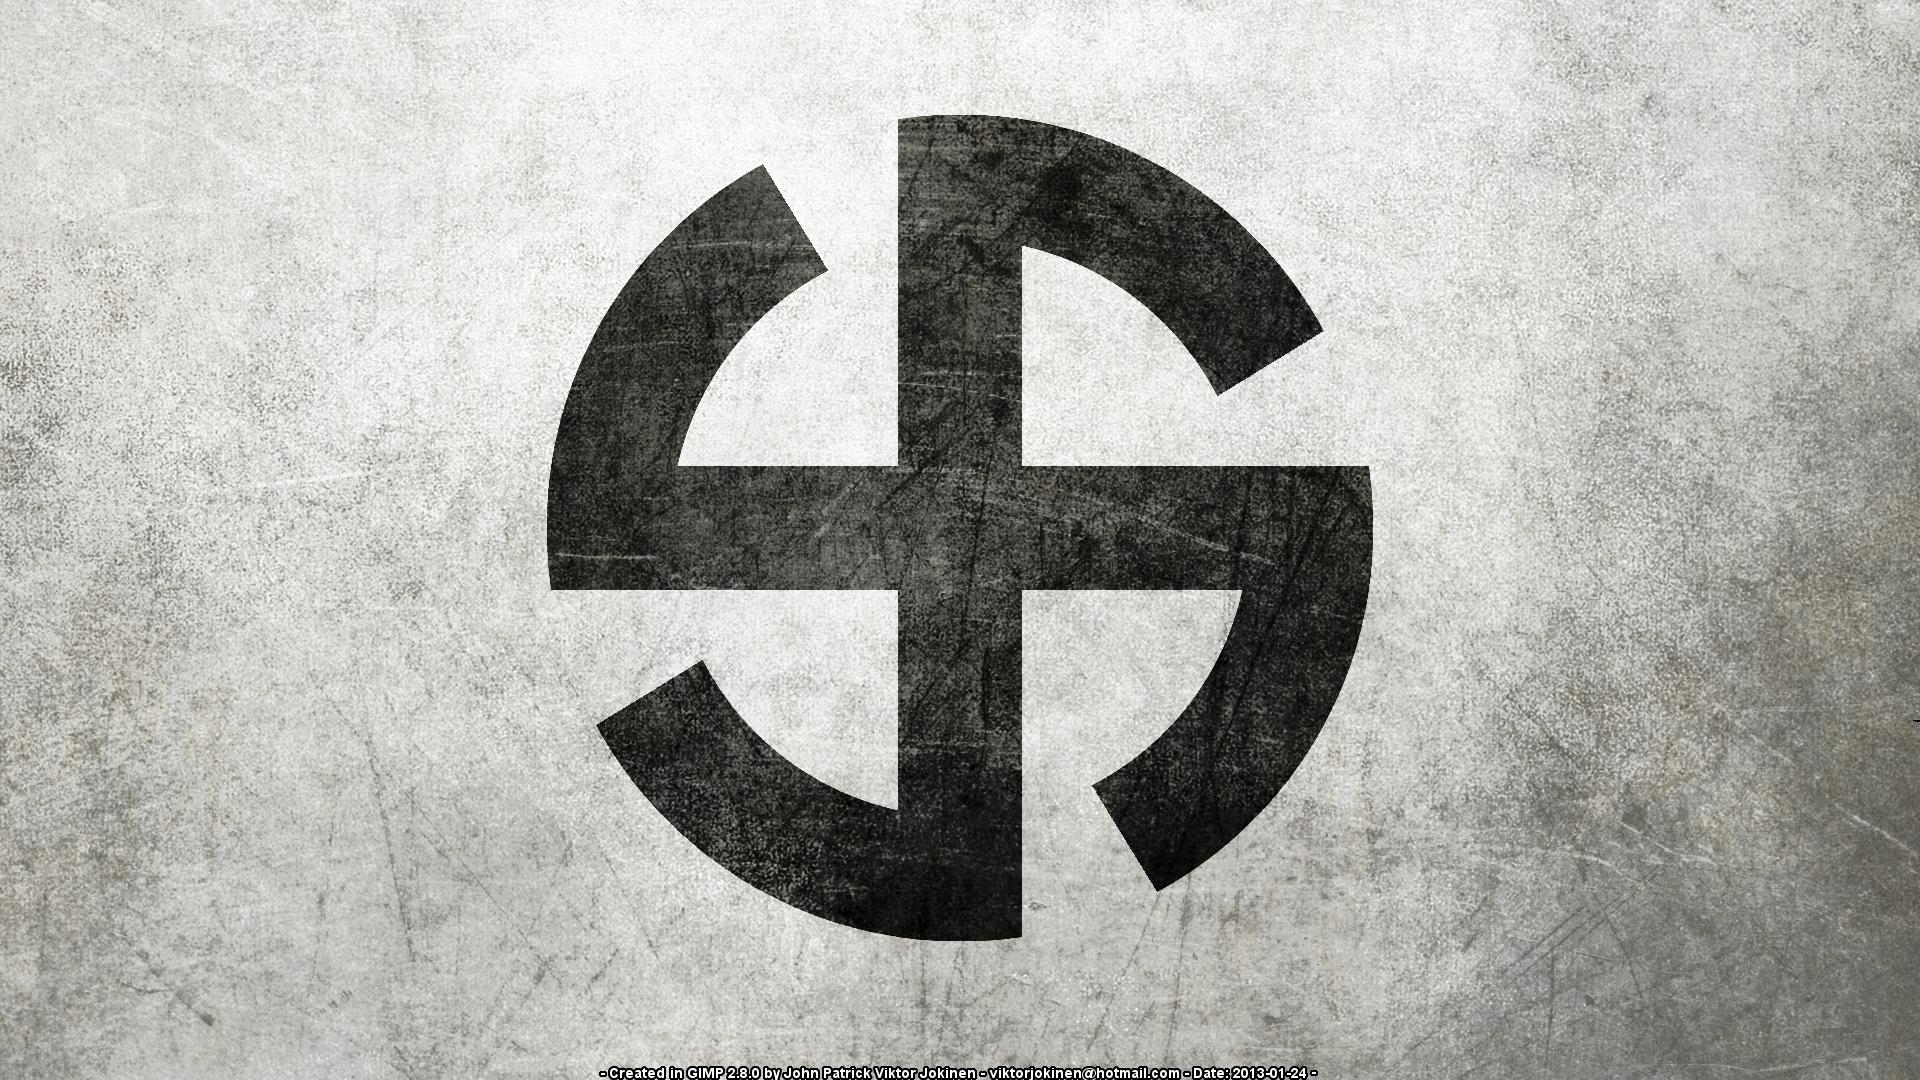 swastik의 hd 벽지,폰트,상징,제도법,검정색과 흰색,번호